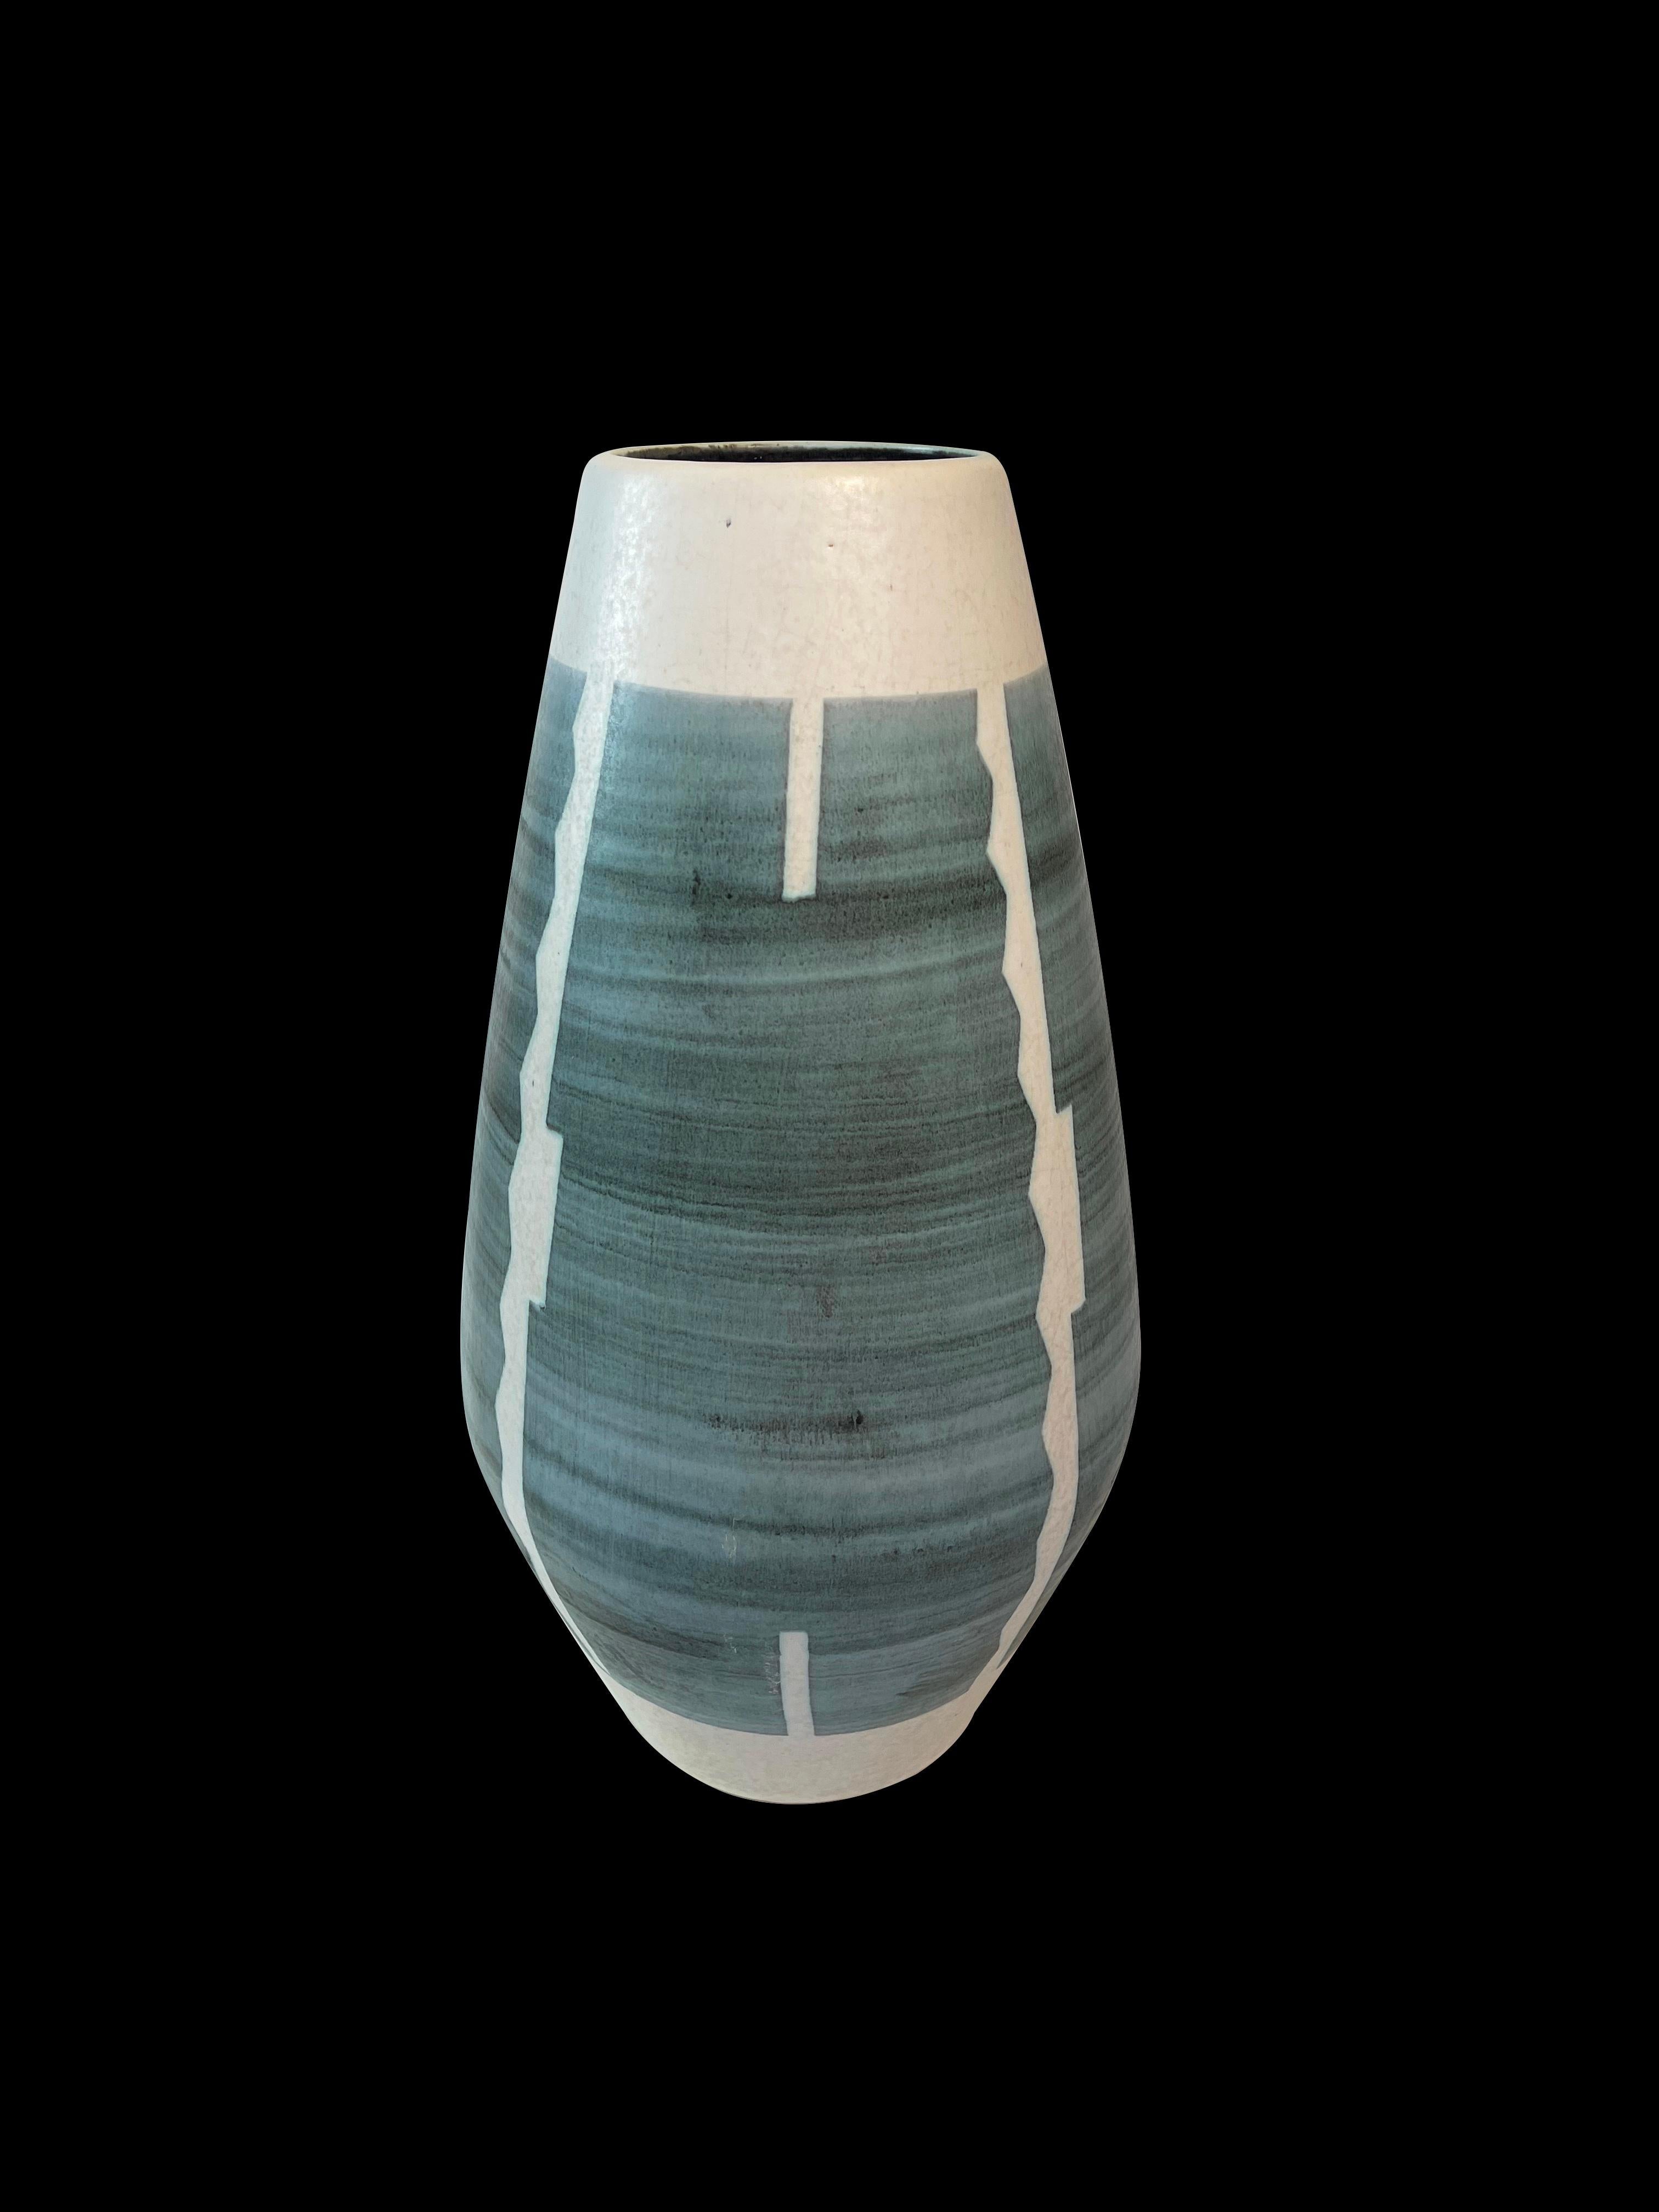 Große beeindruckende Bodenvase aus der Mitte des Jahrhunderts aus Keramik der damaligen westdeutschen Töpferfirma Fohr.
Diese Vase zeigt modernistische Muster, die von afrikanischen Ethnomustern inspiriert sind.
Hier auf einer hellbeige/grauen